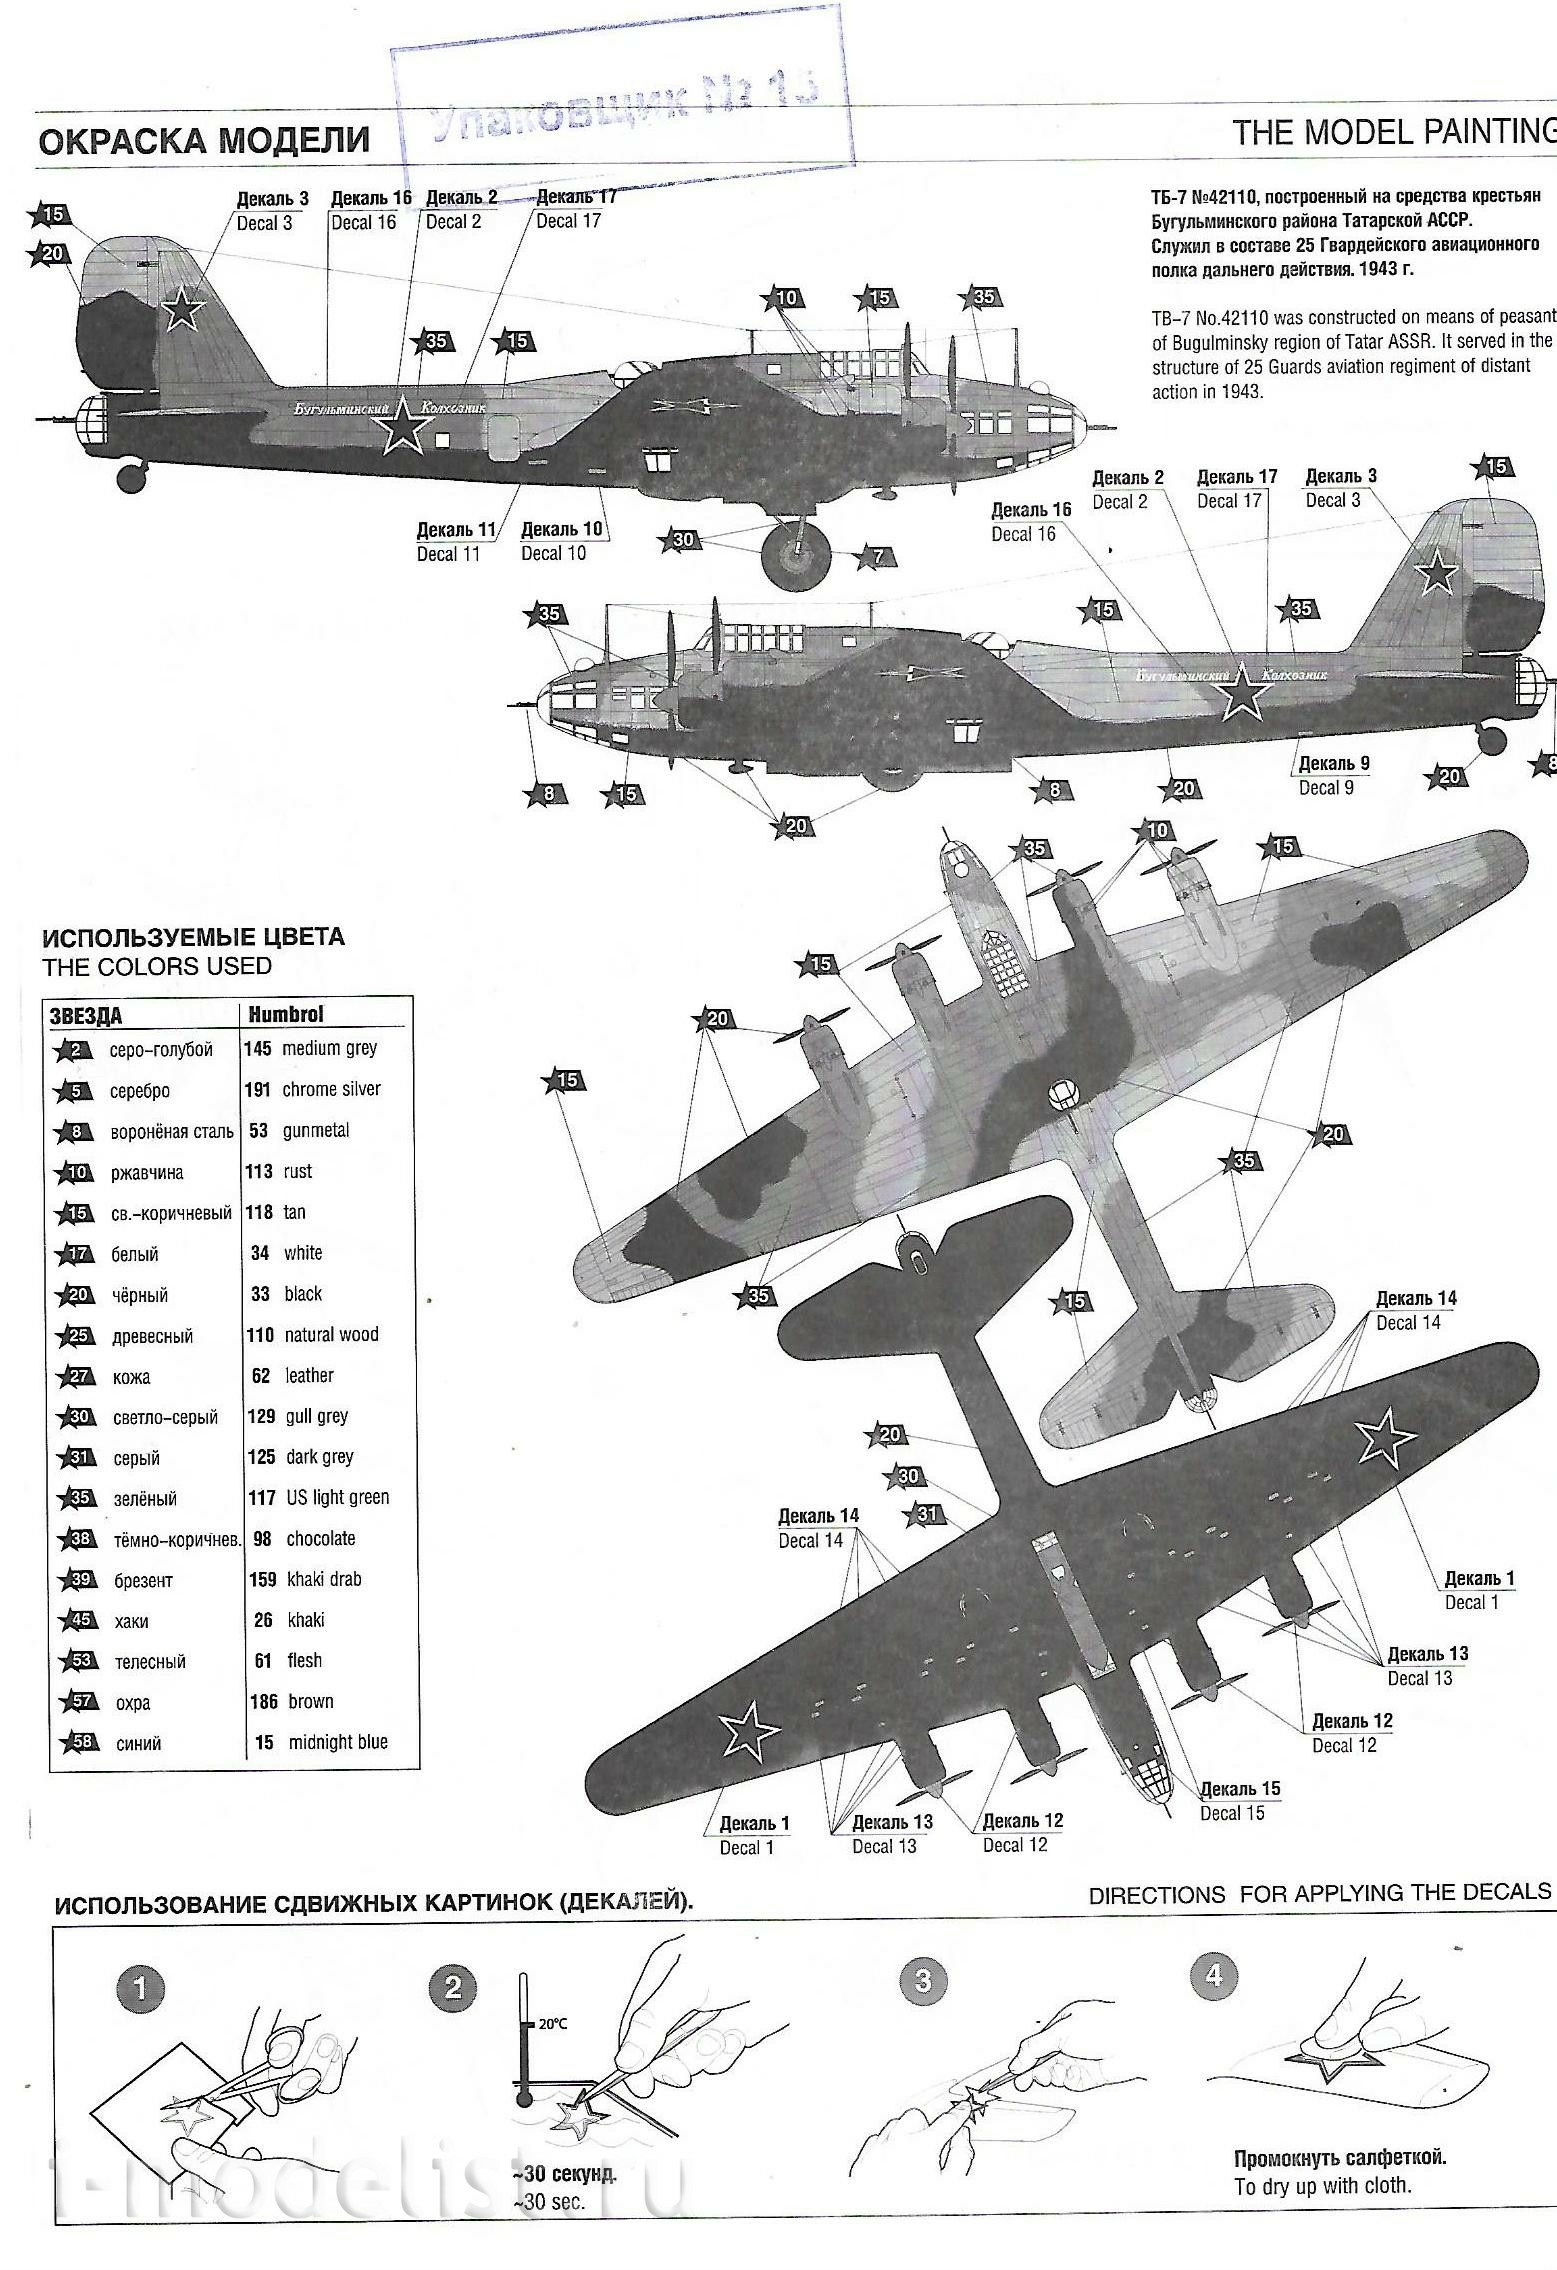 7291 Zvezda 1/72 Soviet bomber TB-7